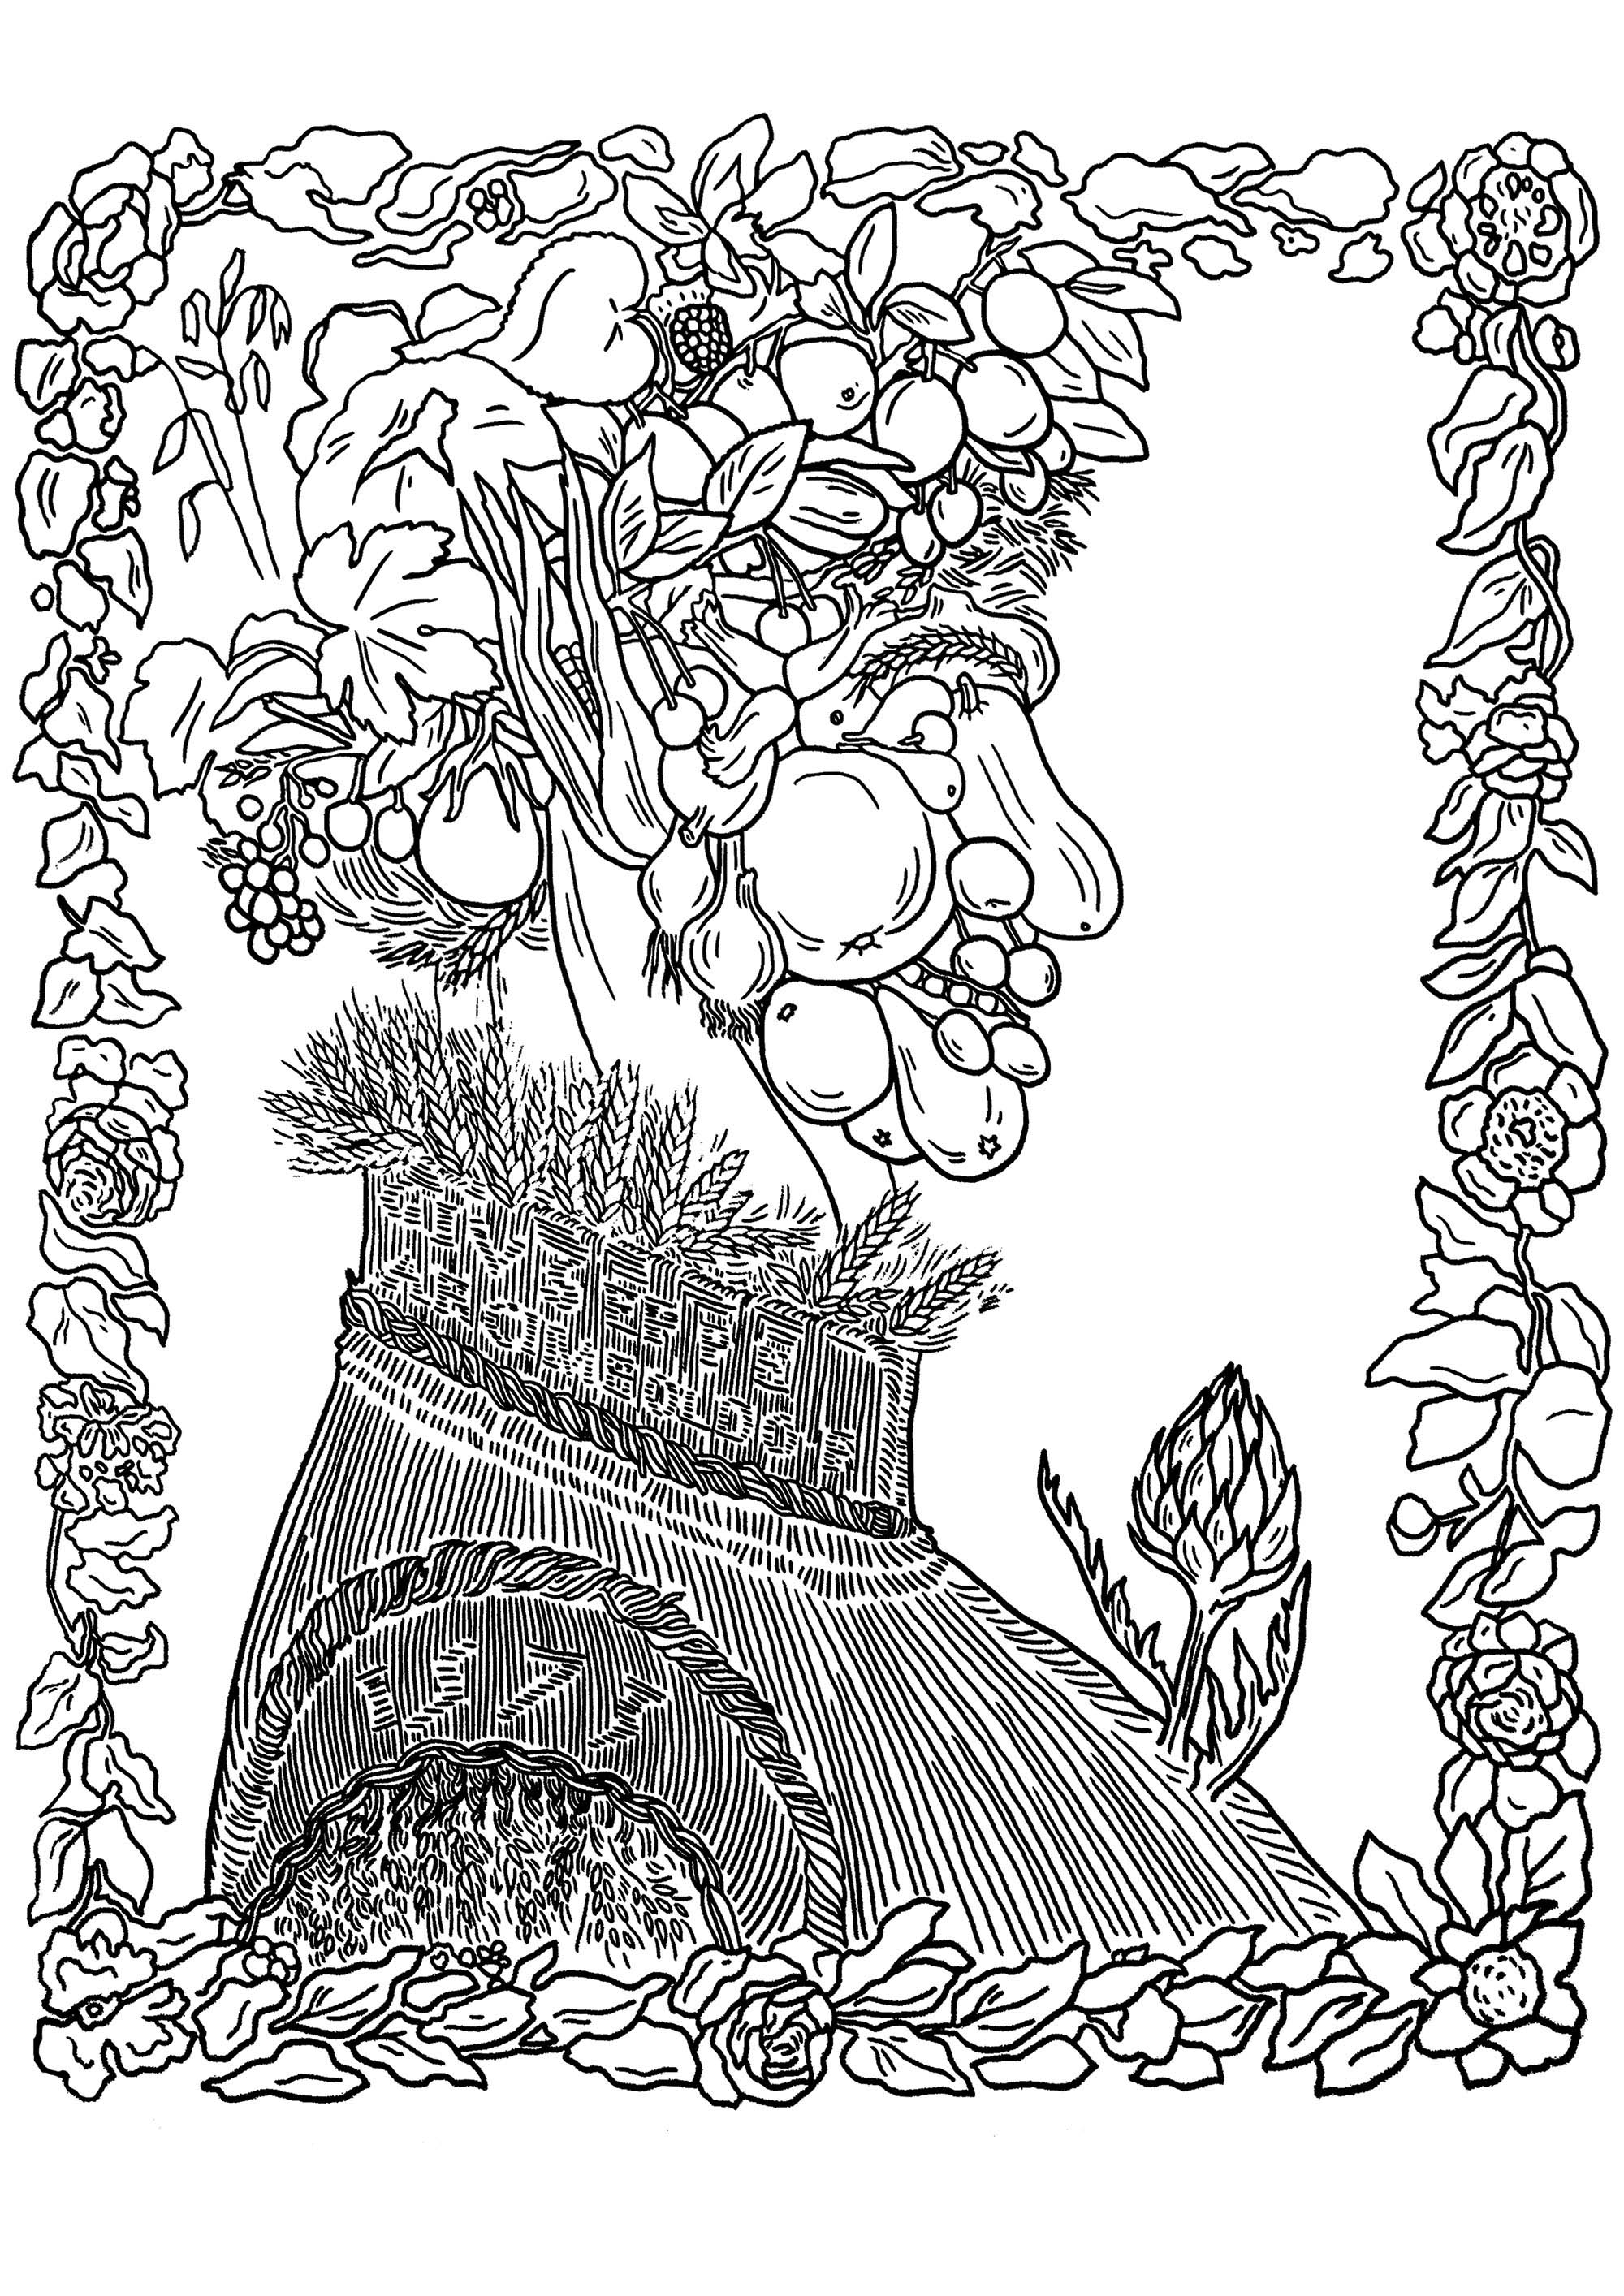 Una testa ritratto fatta interamente di frutta, verdura e fiori, di Giuseppe Arcimboldo : Estate